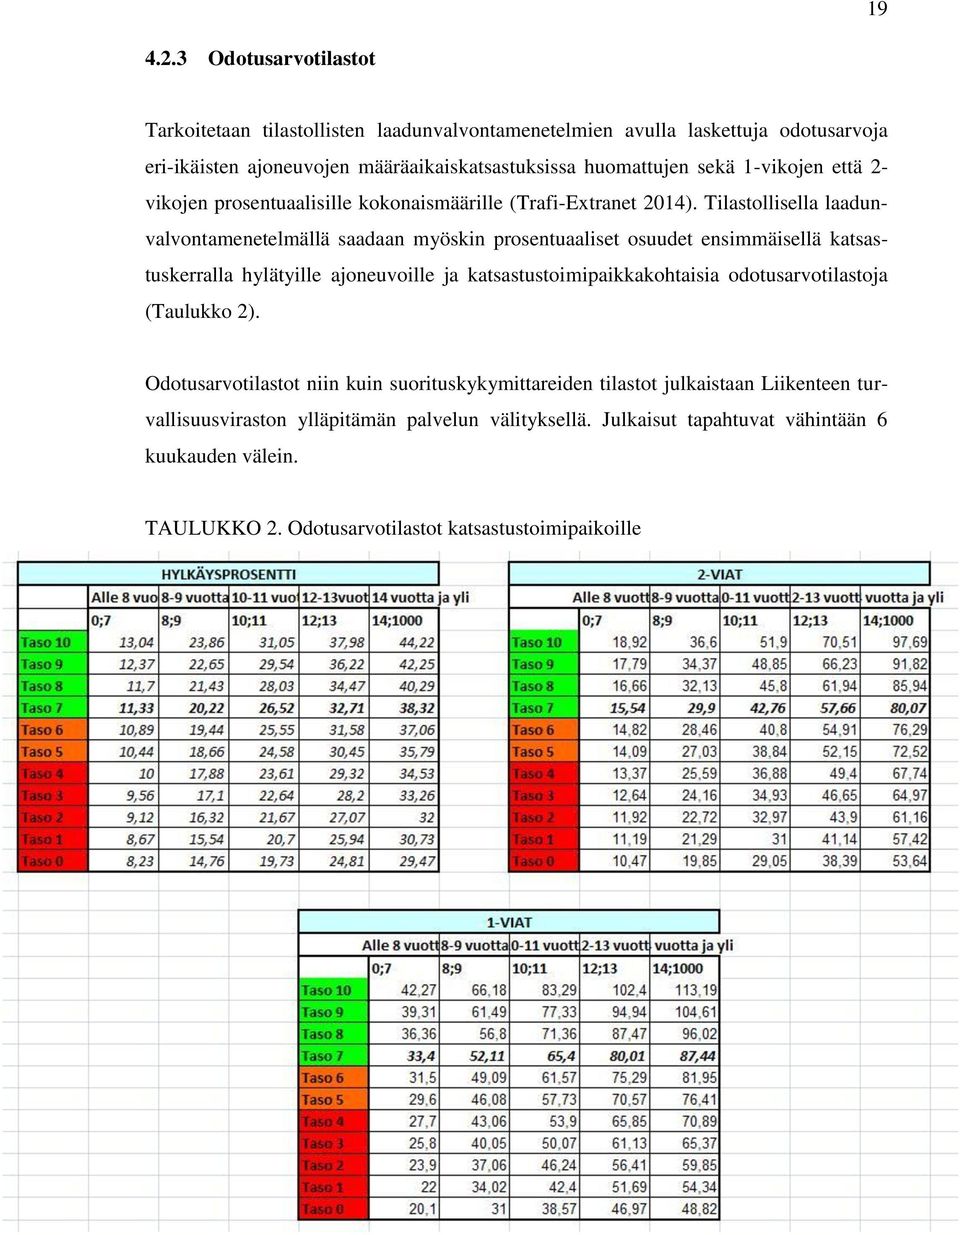 1-vikojen että 2- vikojen prosentuaalisille kokonaismäärille (Trafi-Extranet 2014).